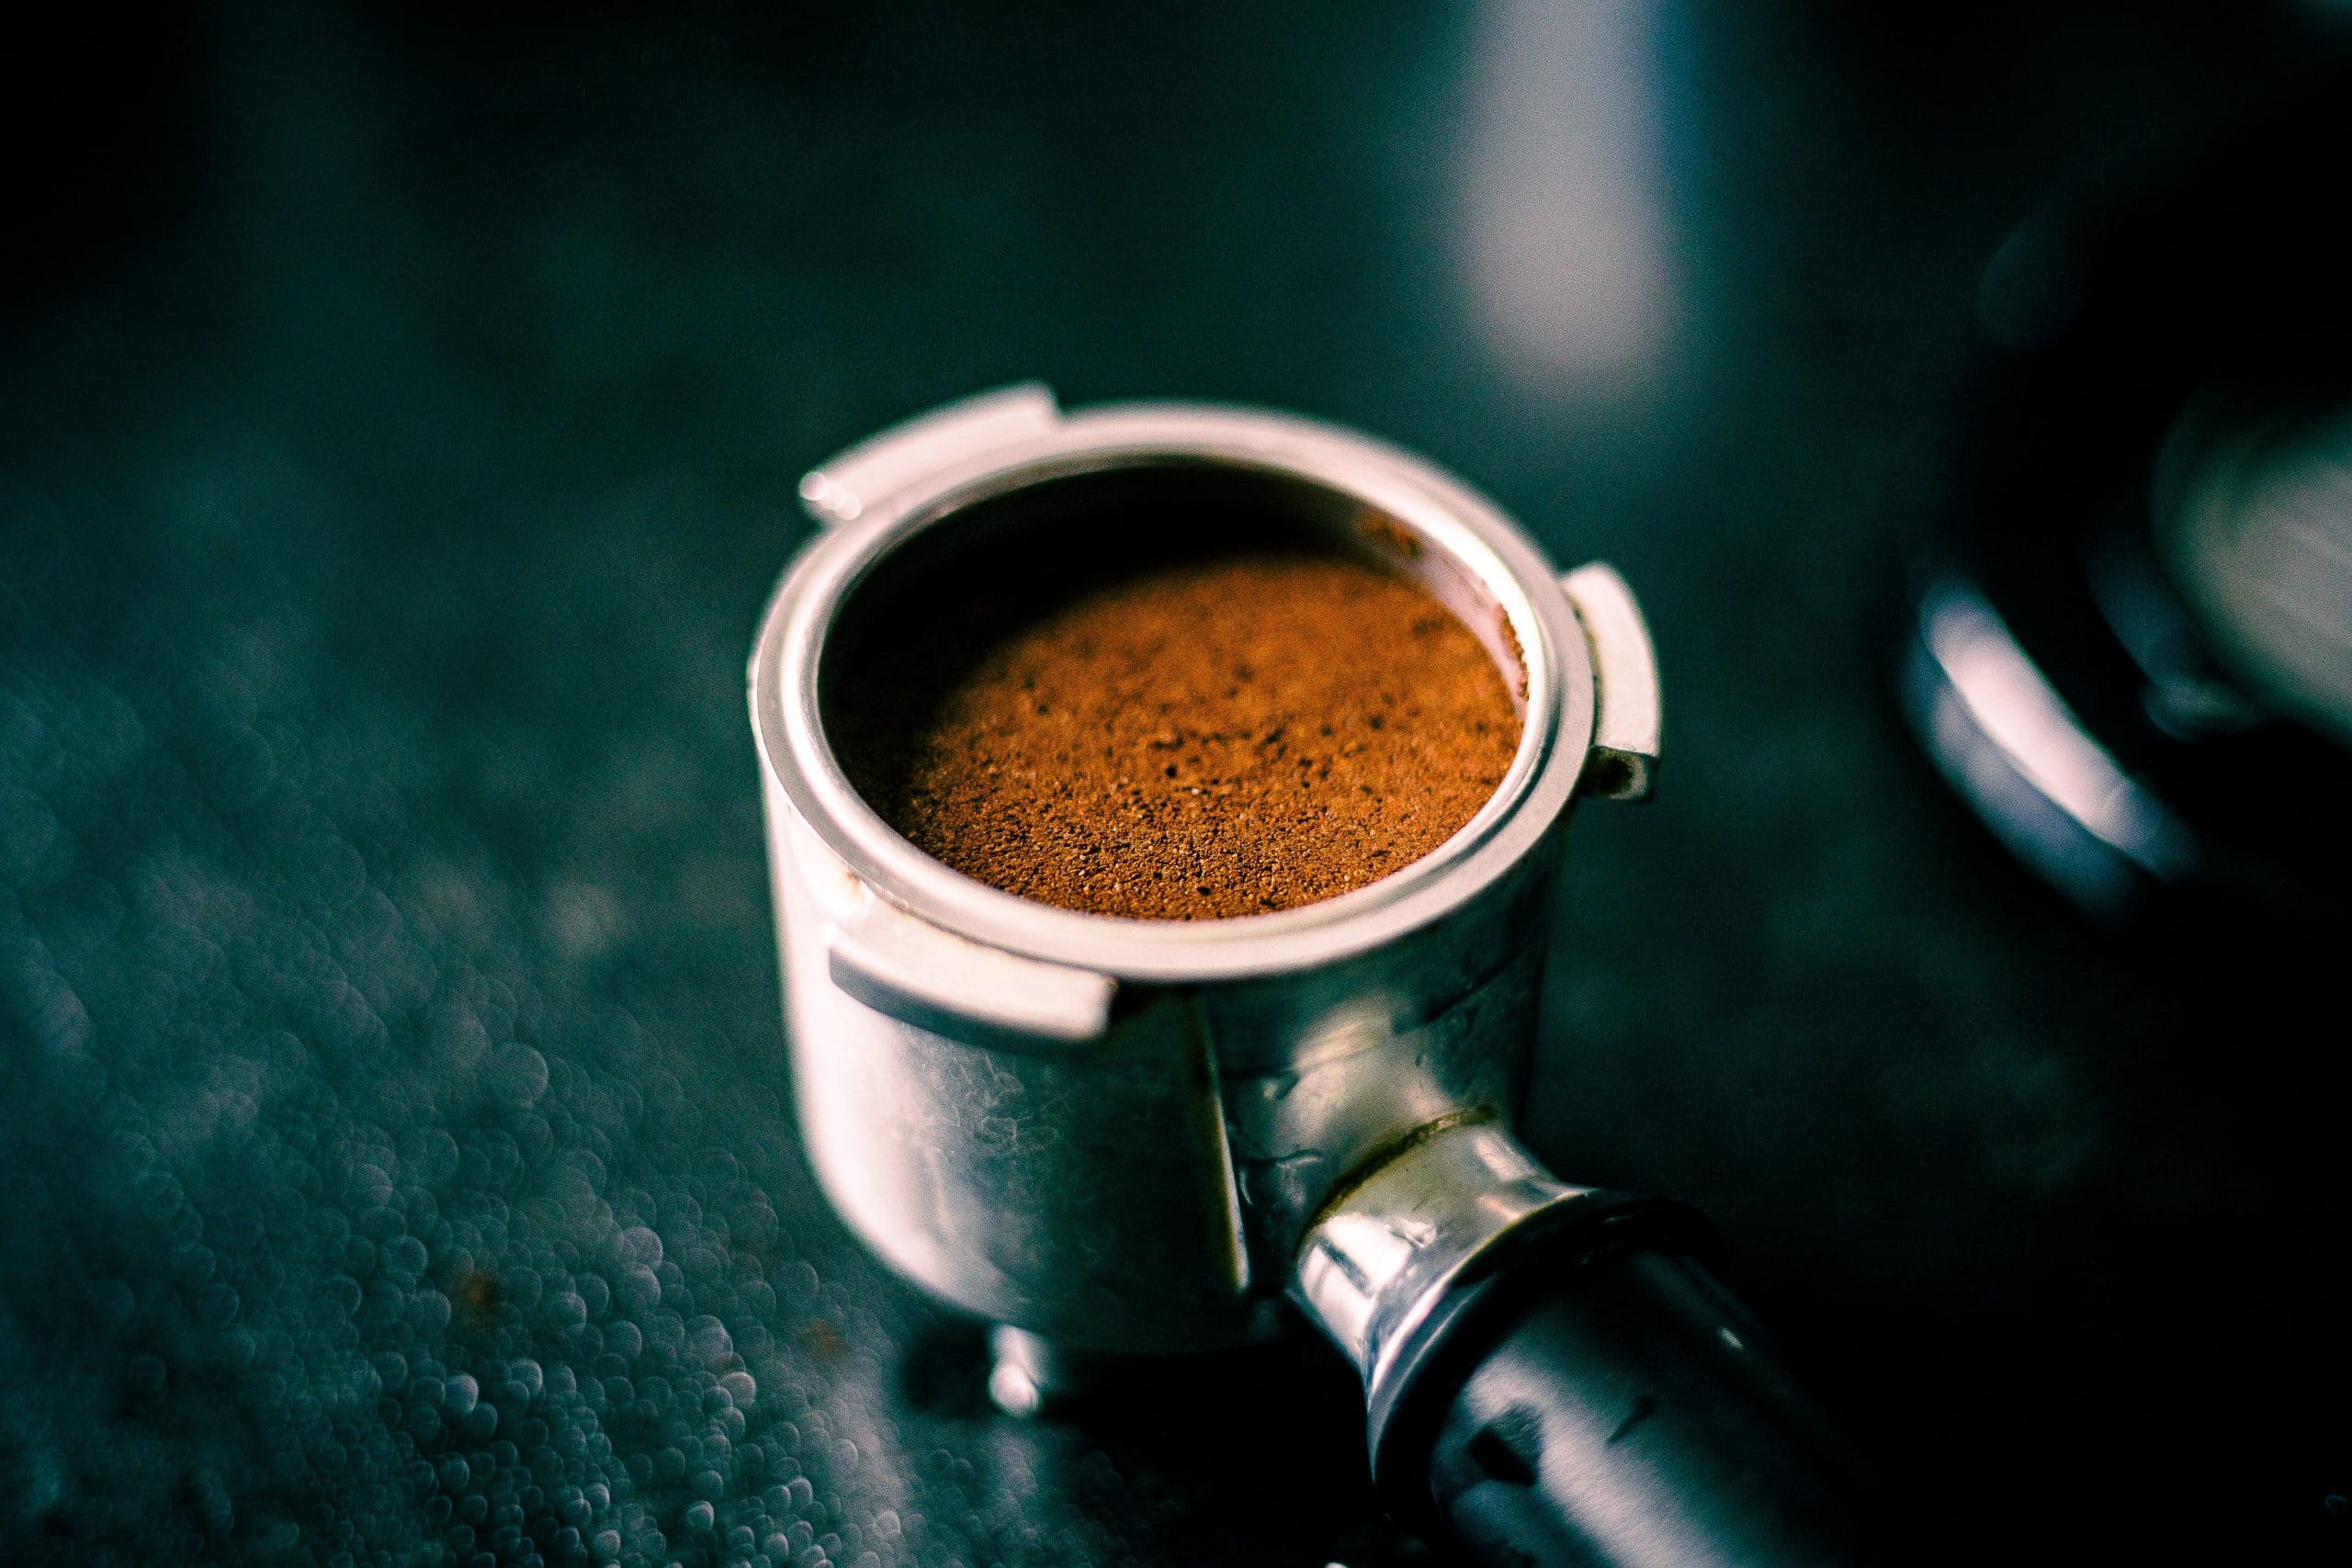 TUTO] Comment faire un café filtre ? (avec une cafetière